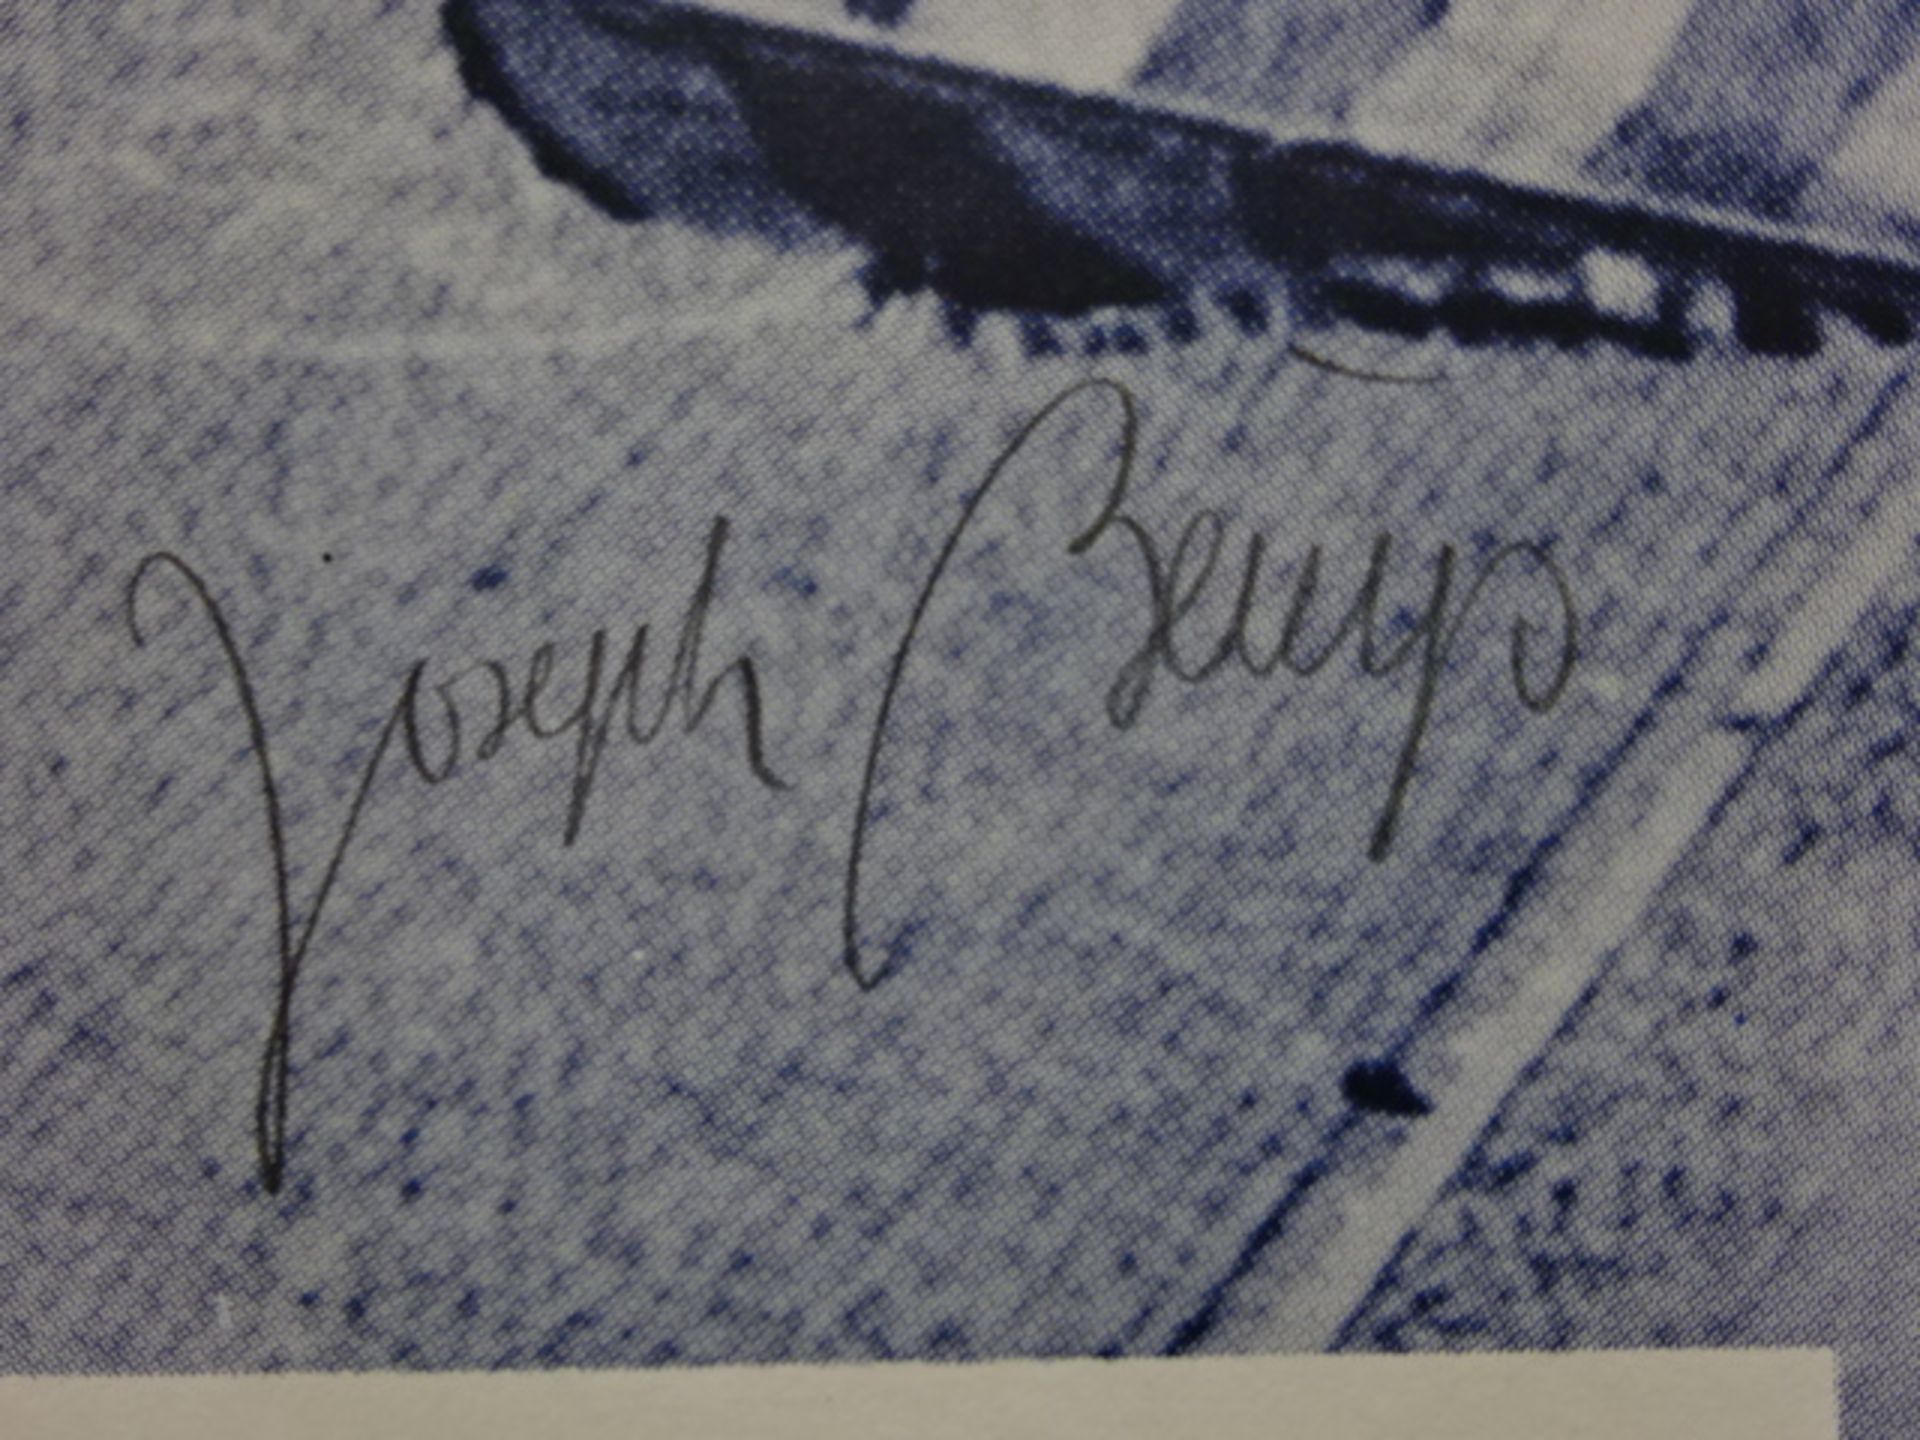 Beuys - 7000 Eichen signiert - Bild 3 aus 4